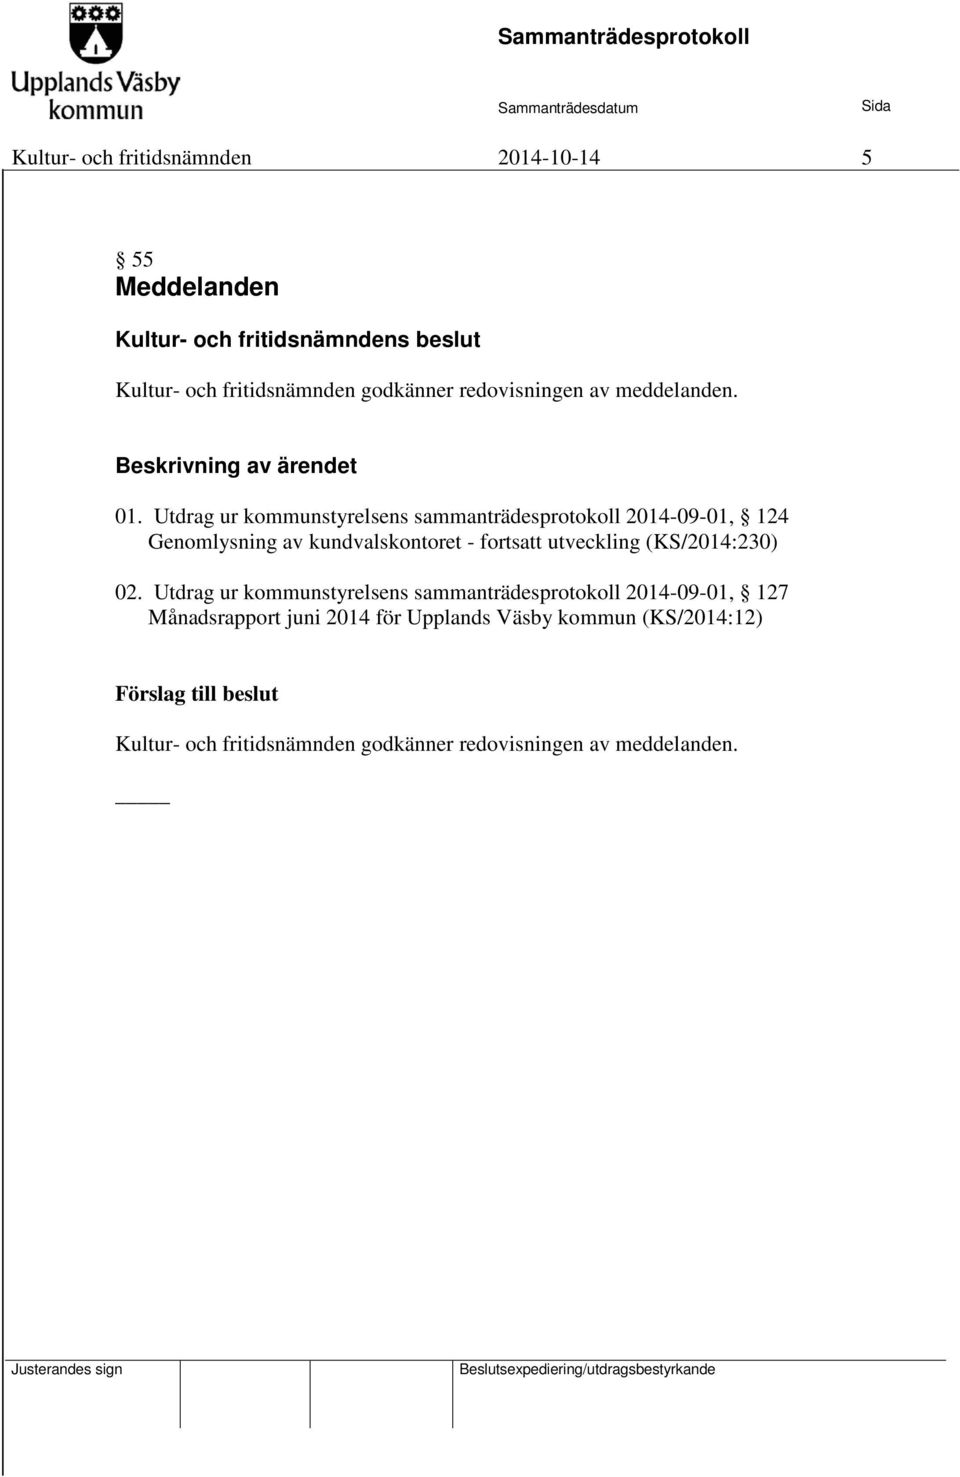 Utdrag ur kommunstyrelsens sammanträdesprotokoll 2014-09-01, 124 Genomlysning av kundvalskontoret - fortsatt utveckling (KS/2014:230)